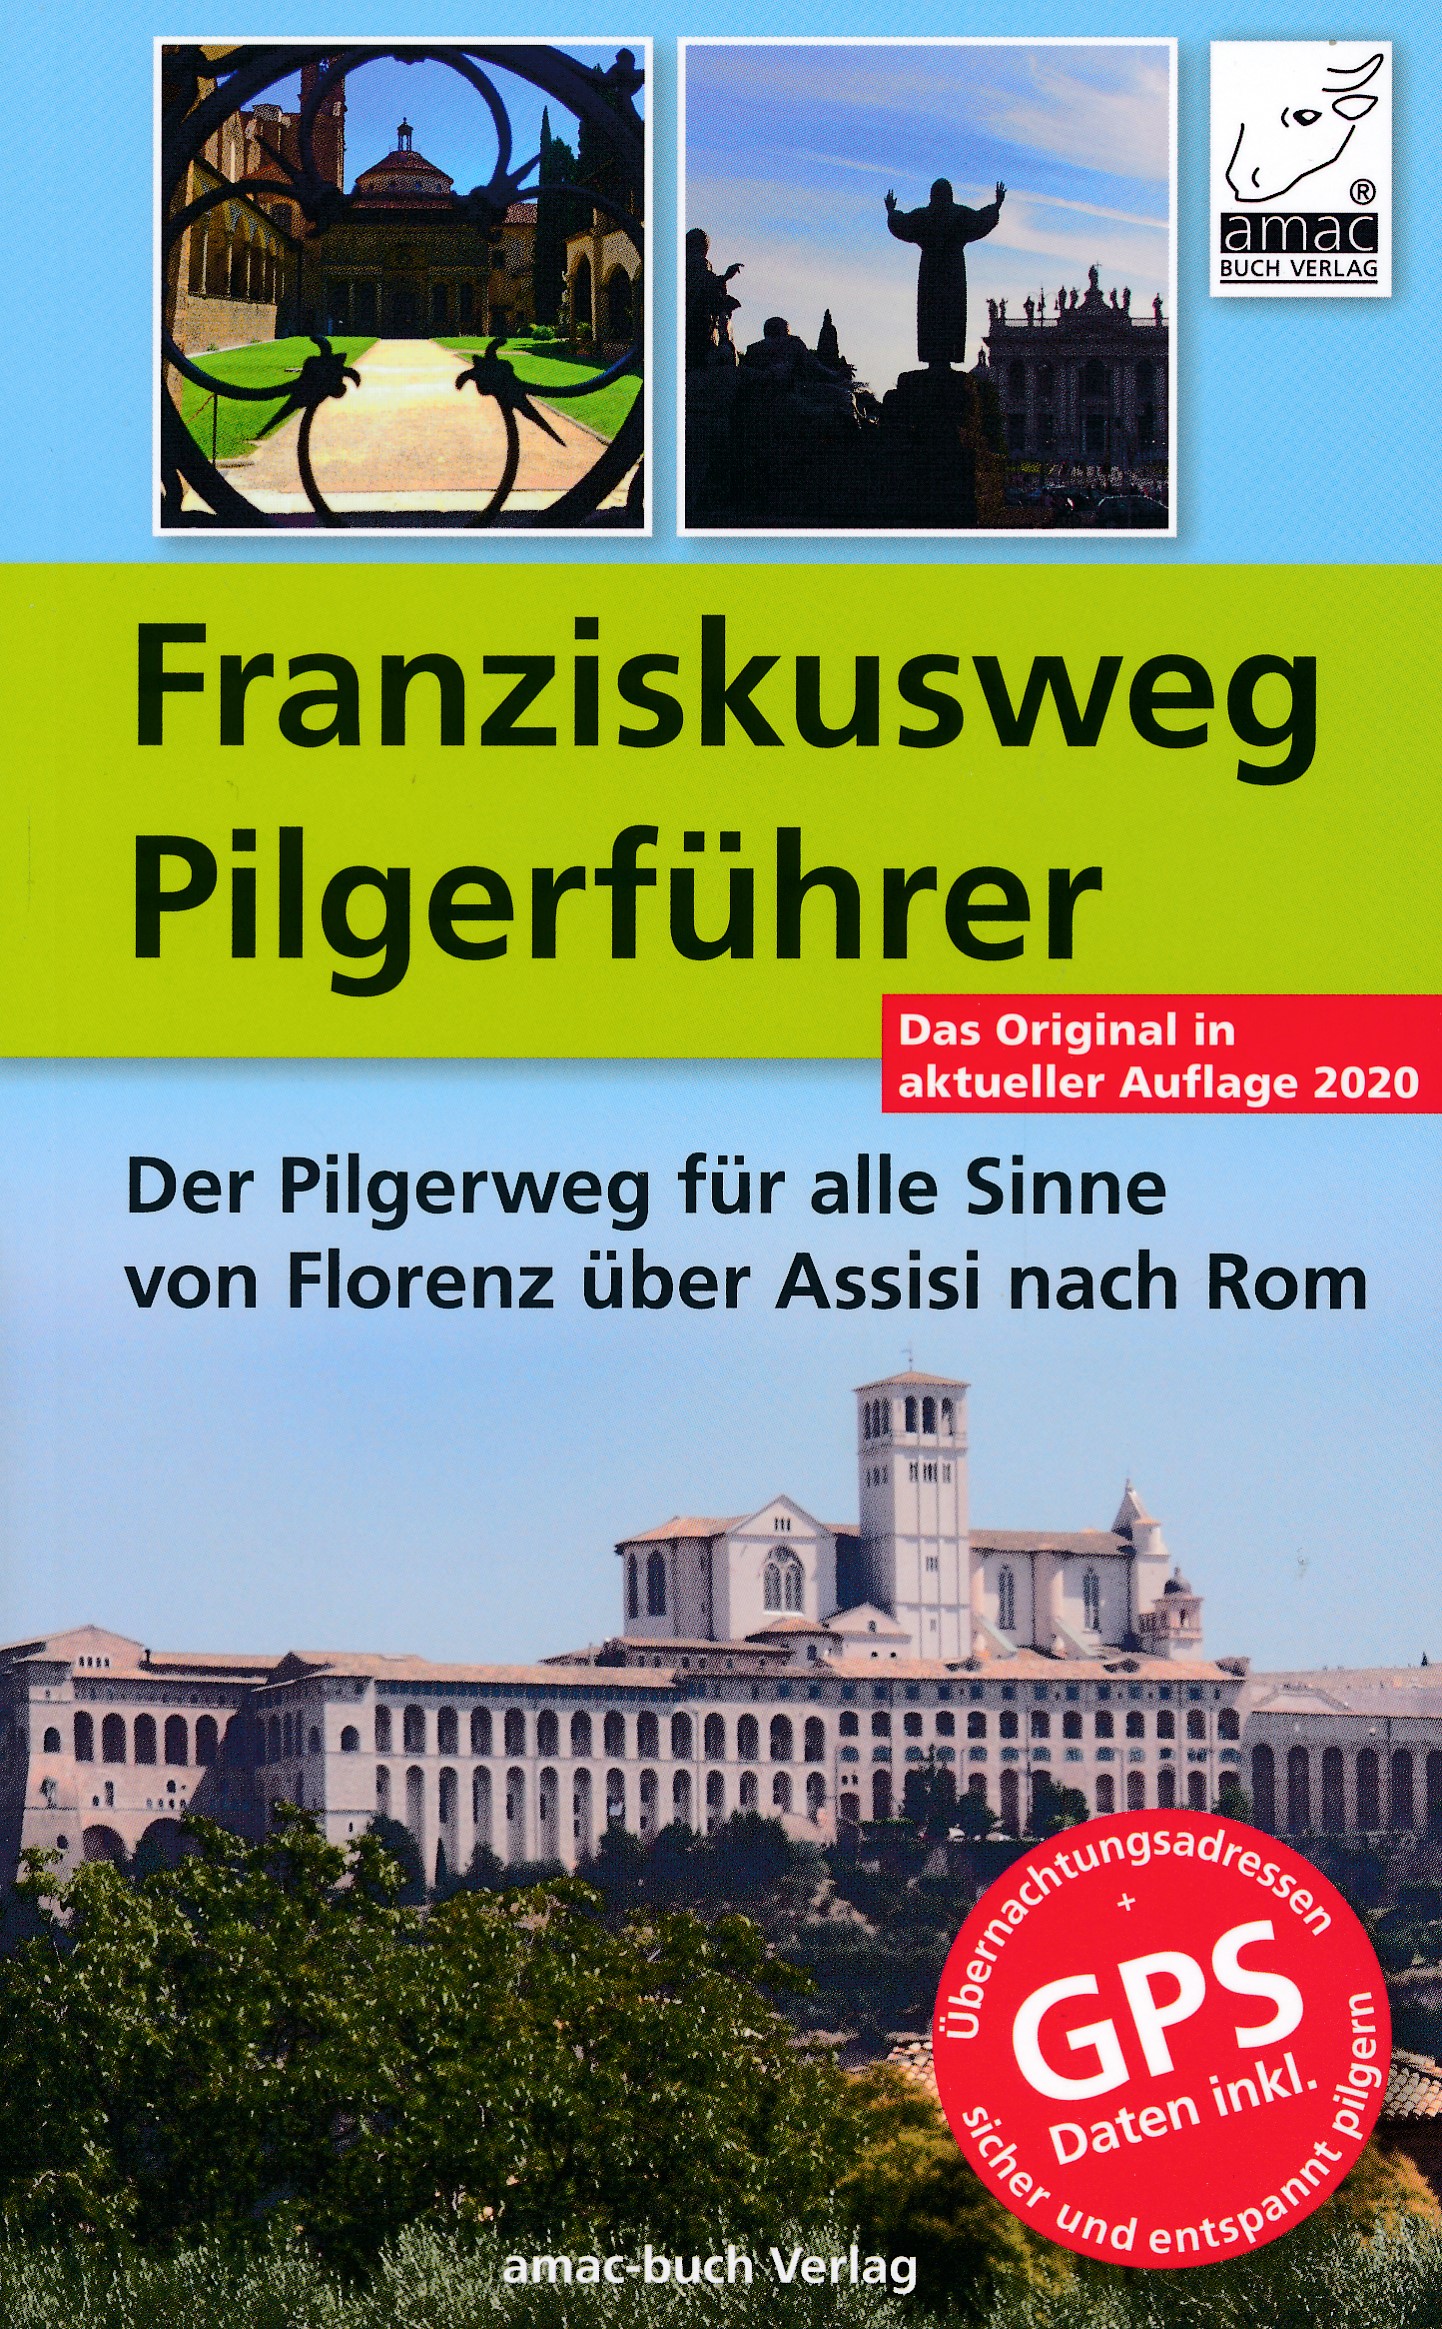 Online bestellen: Pelgrimsroute - Wandelgids Franziskusweg Pilgerführer | Amac-Buch